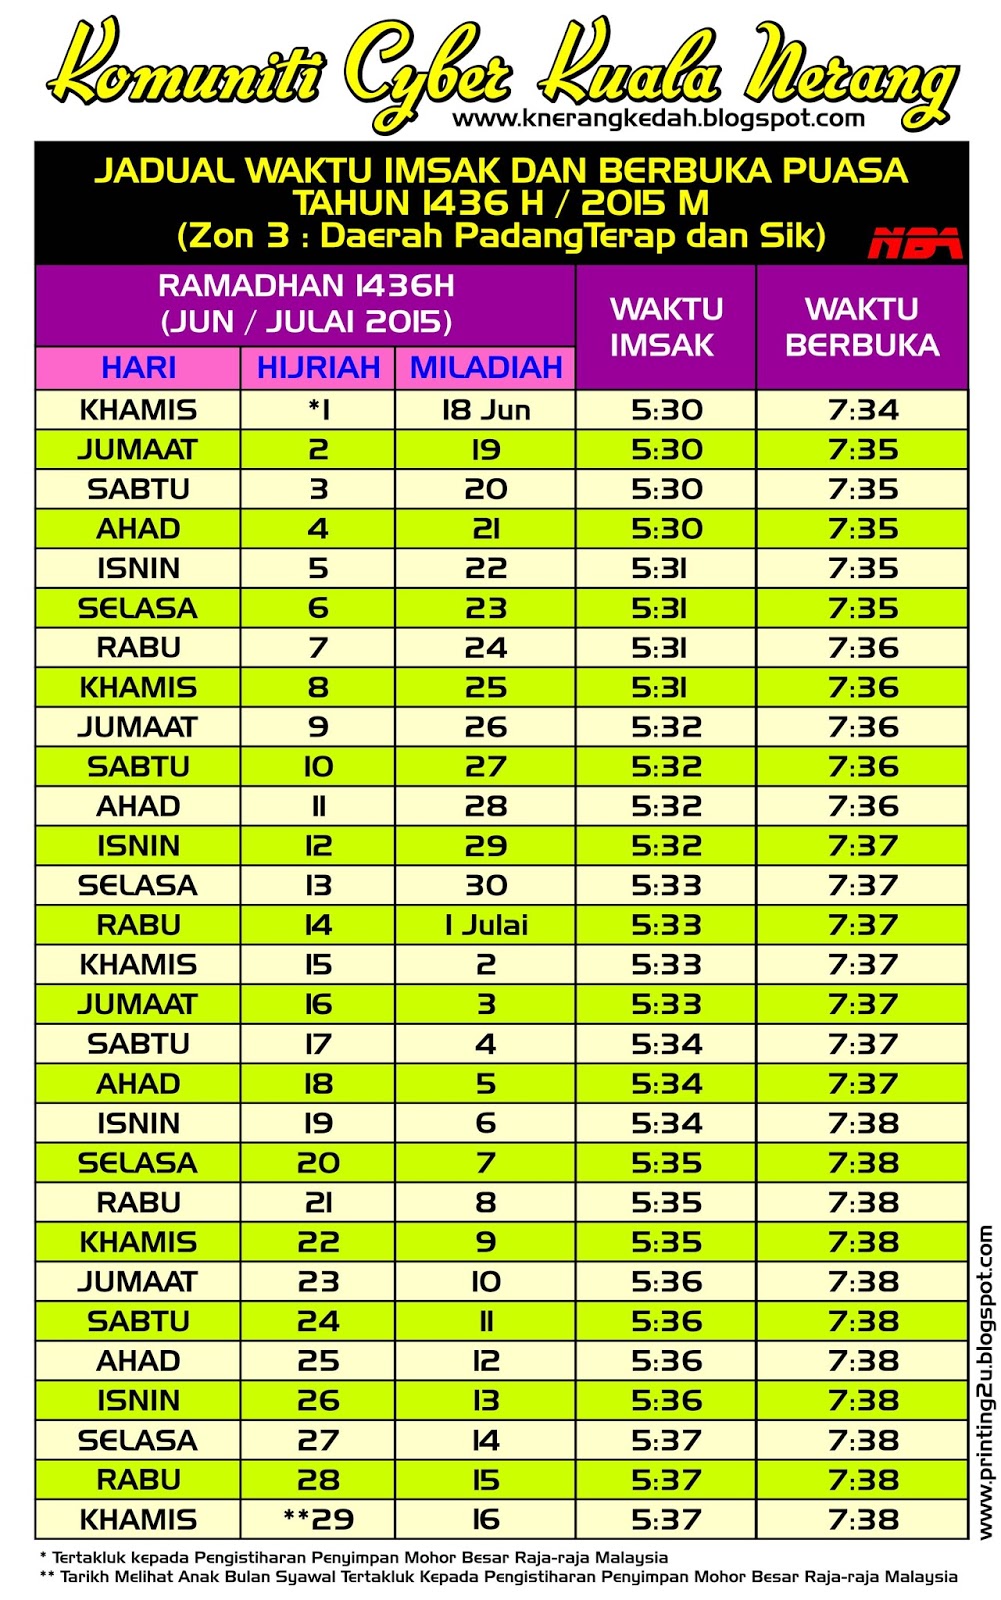 Kuala Nerang: Jadual Waktu Imsak dan Berbuka Puasa 1436H ...